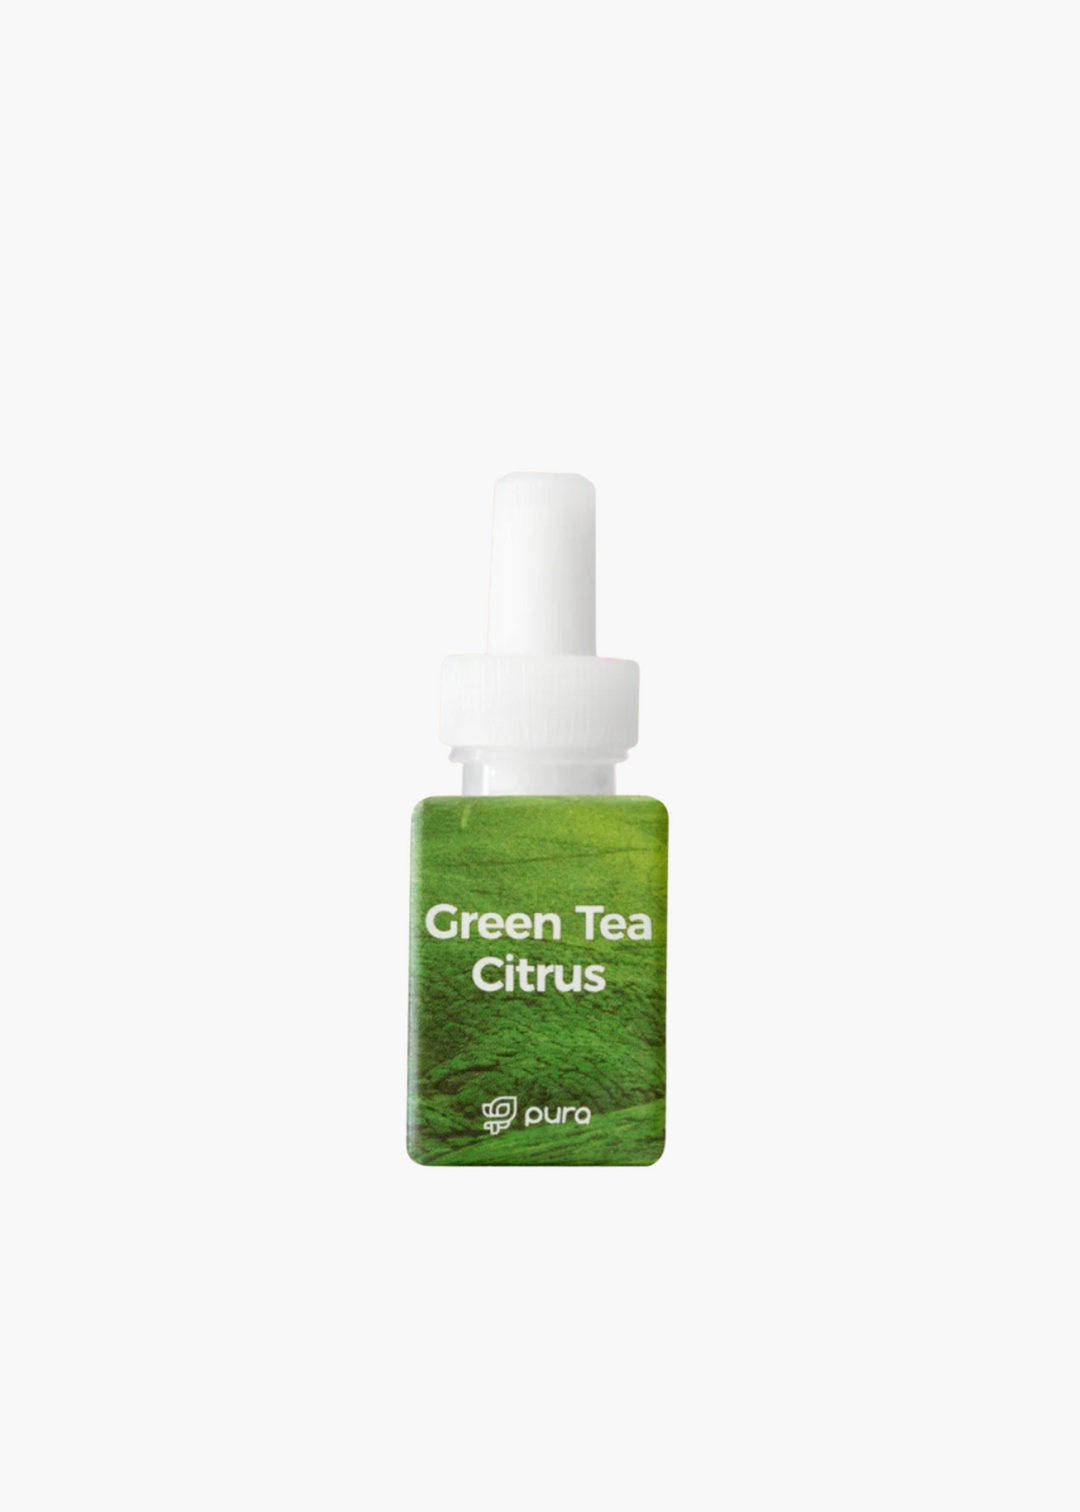 Green Tea Citrus Pura Refill